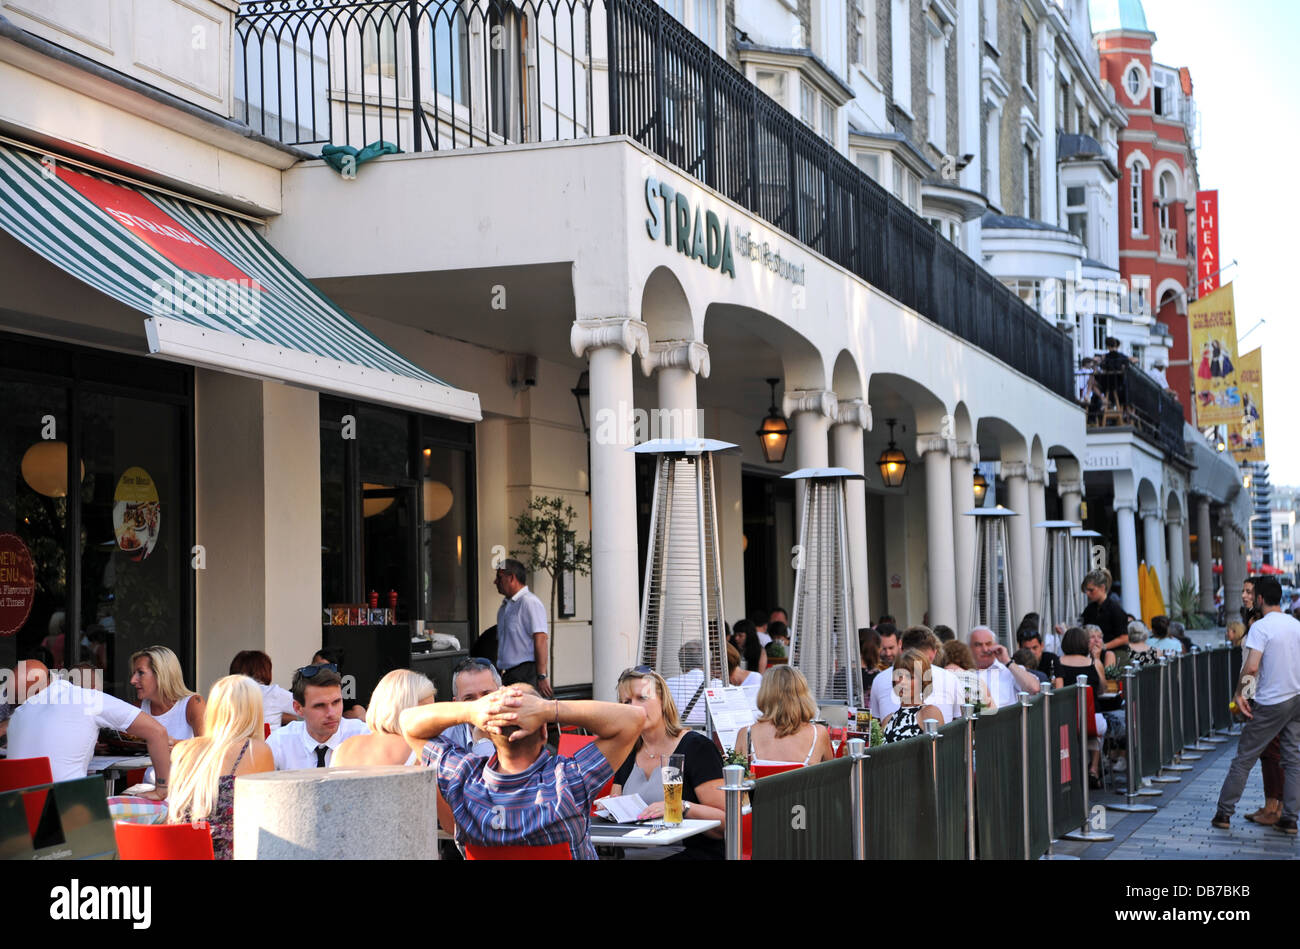 Comer al aire libre en el restaurante Strada en New Road, Brighton UK (ahora cerrado y reemplazado por otro restaurante) Foto de stock